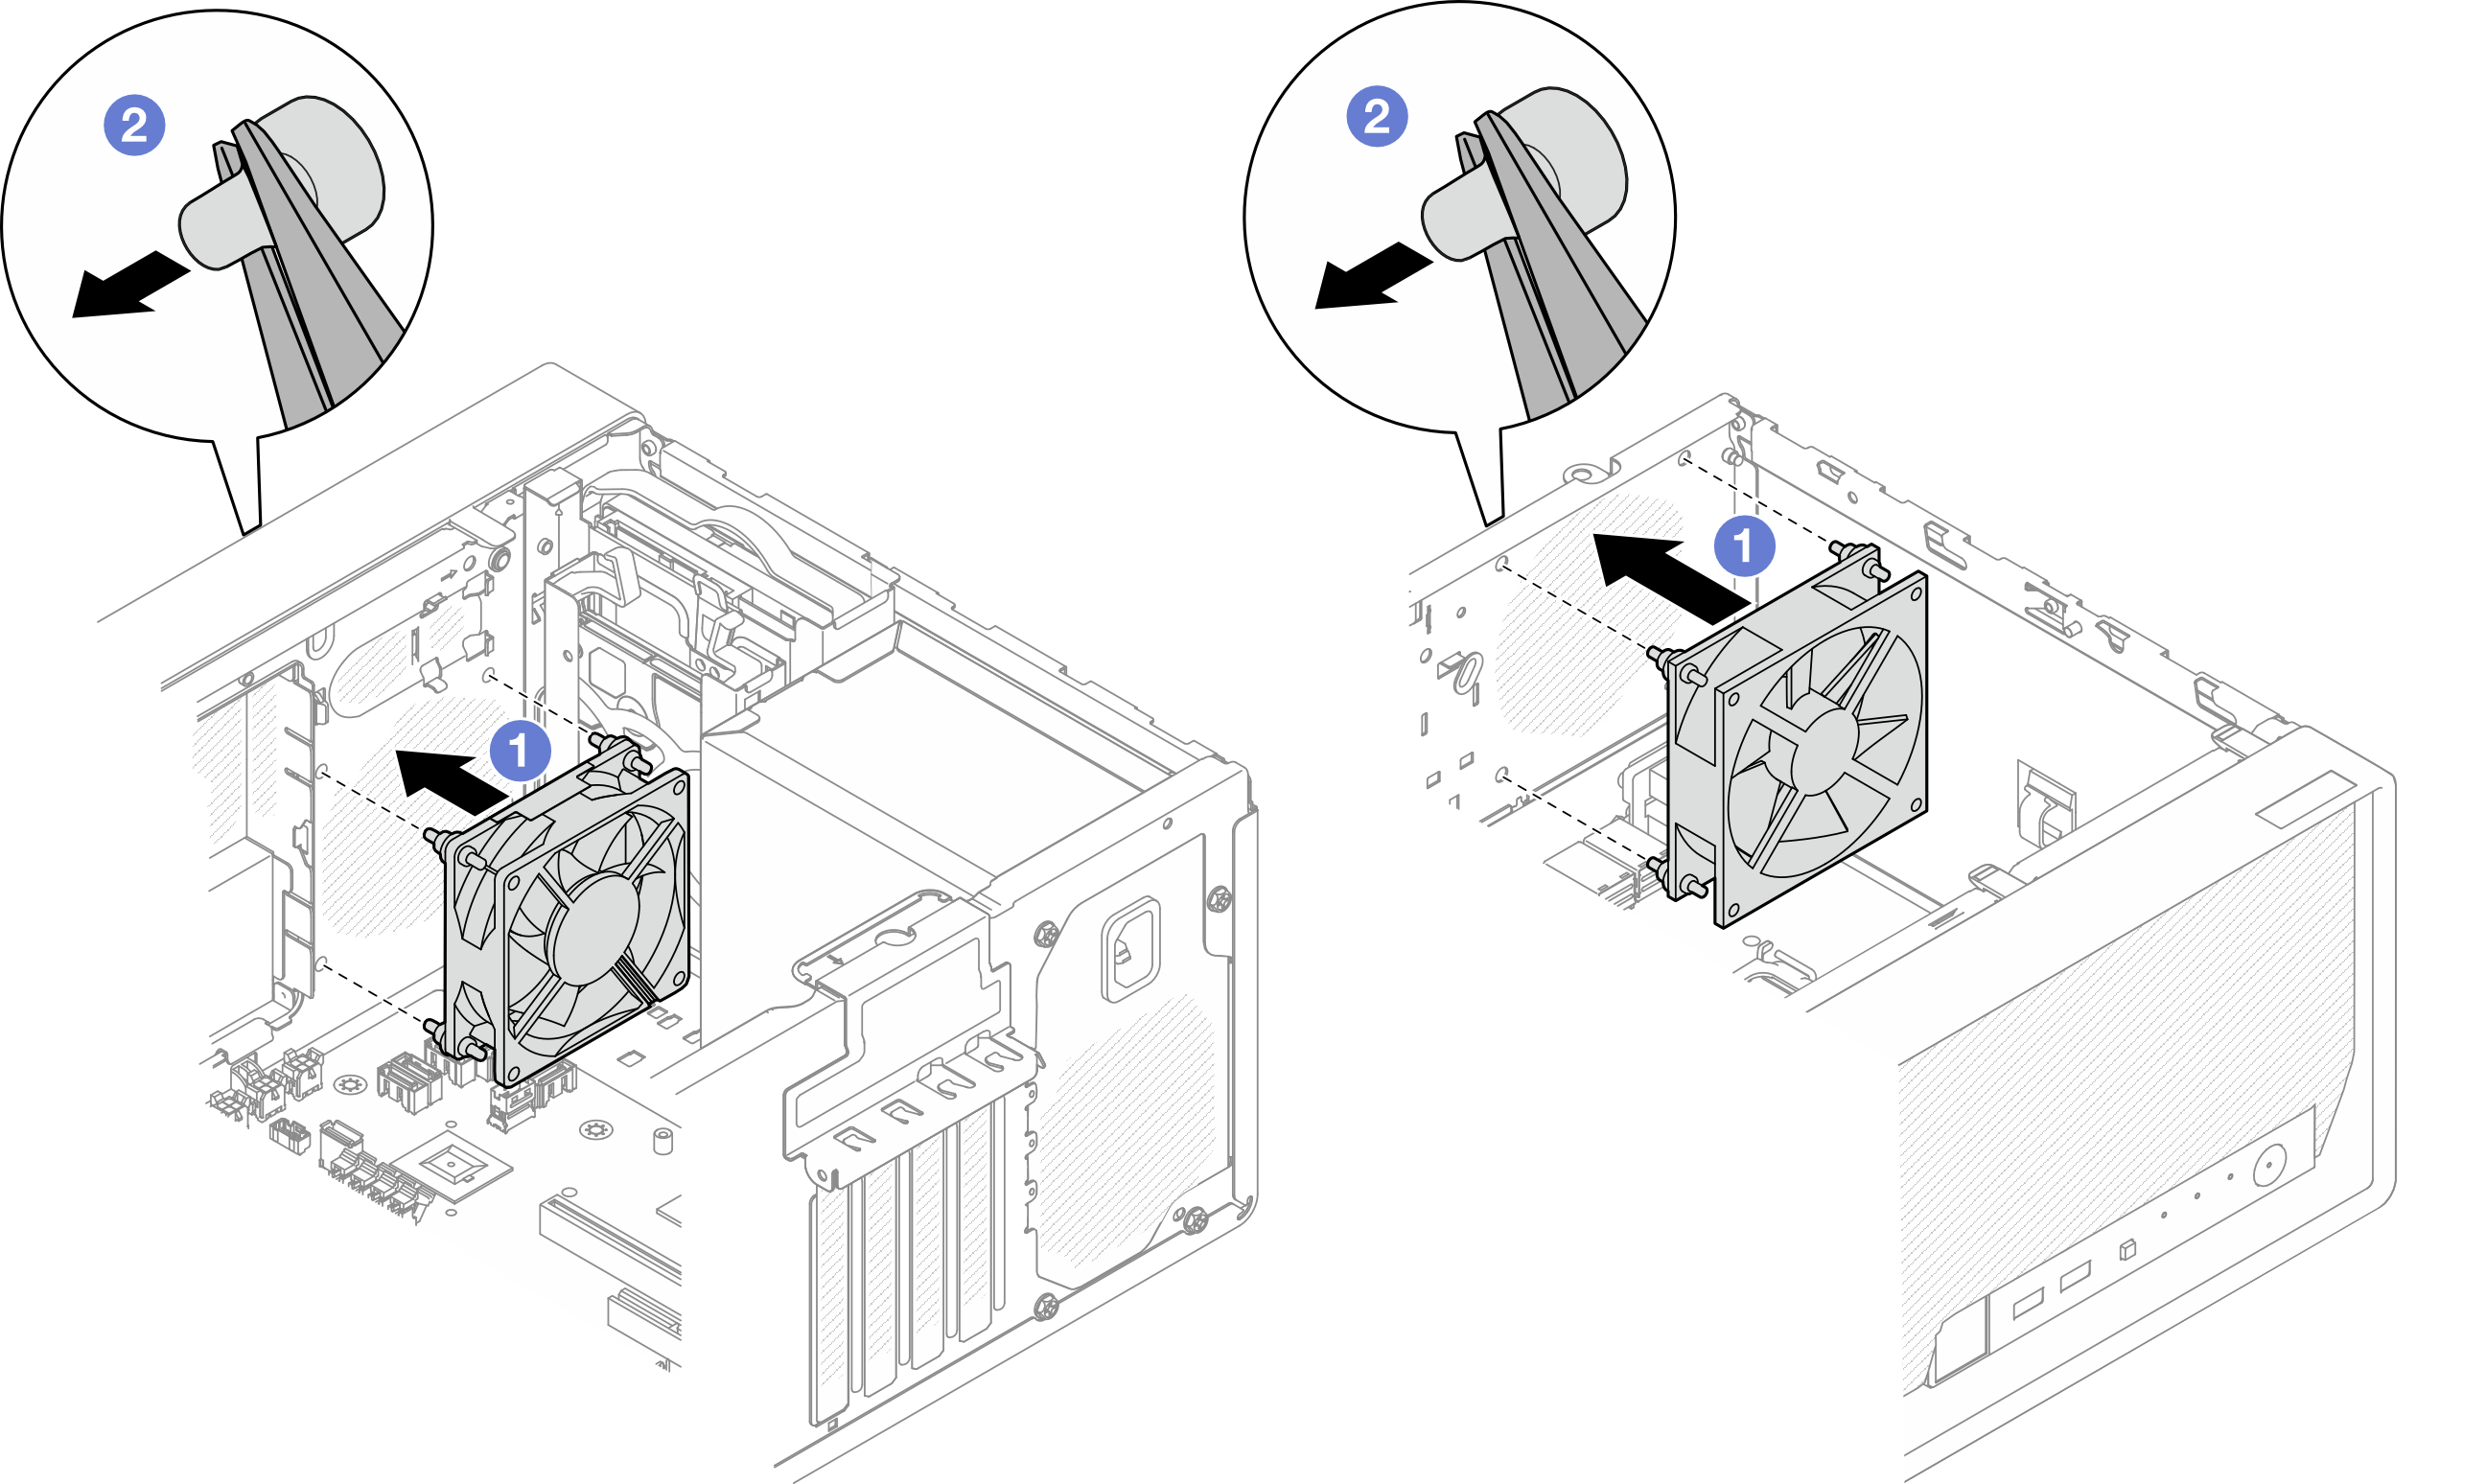 Installing the front fan or the rear fan